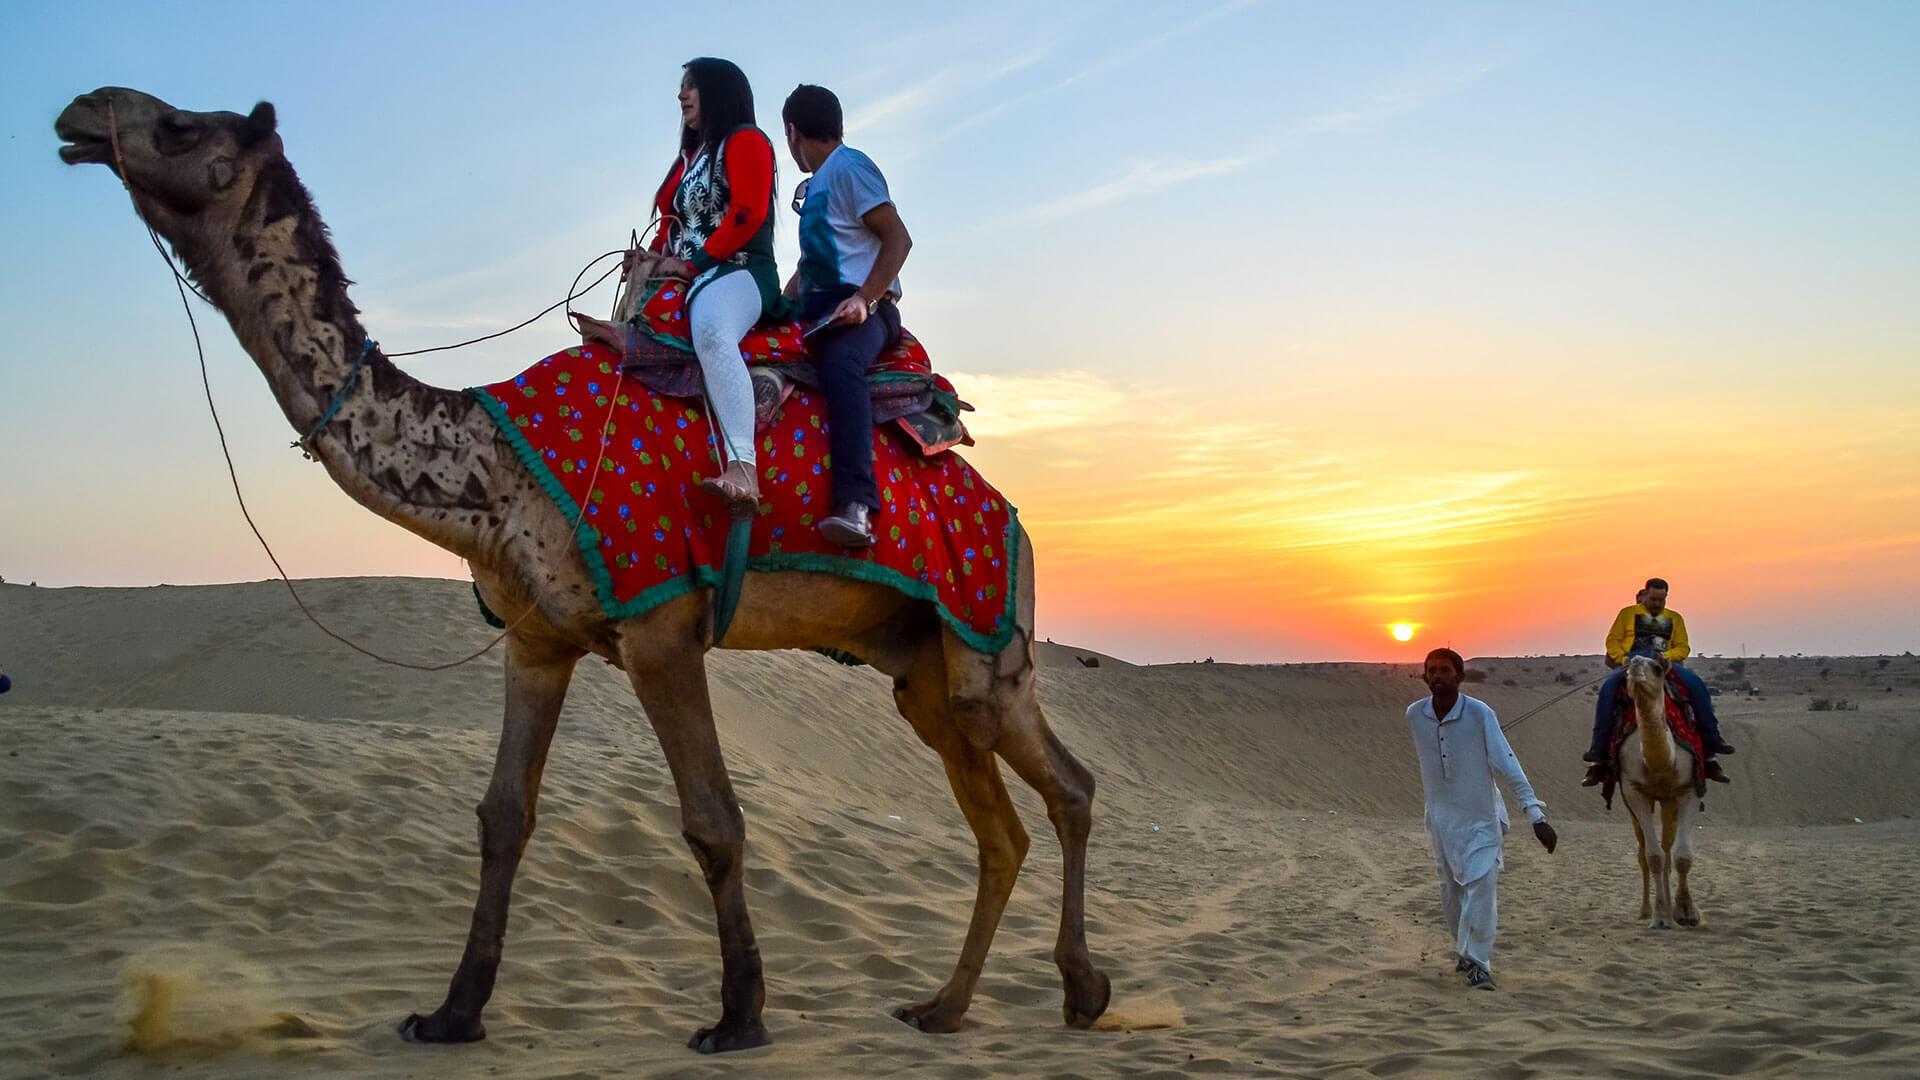 Desert Festival Udaipur, Rajasthan & Desert Festival India